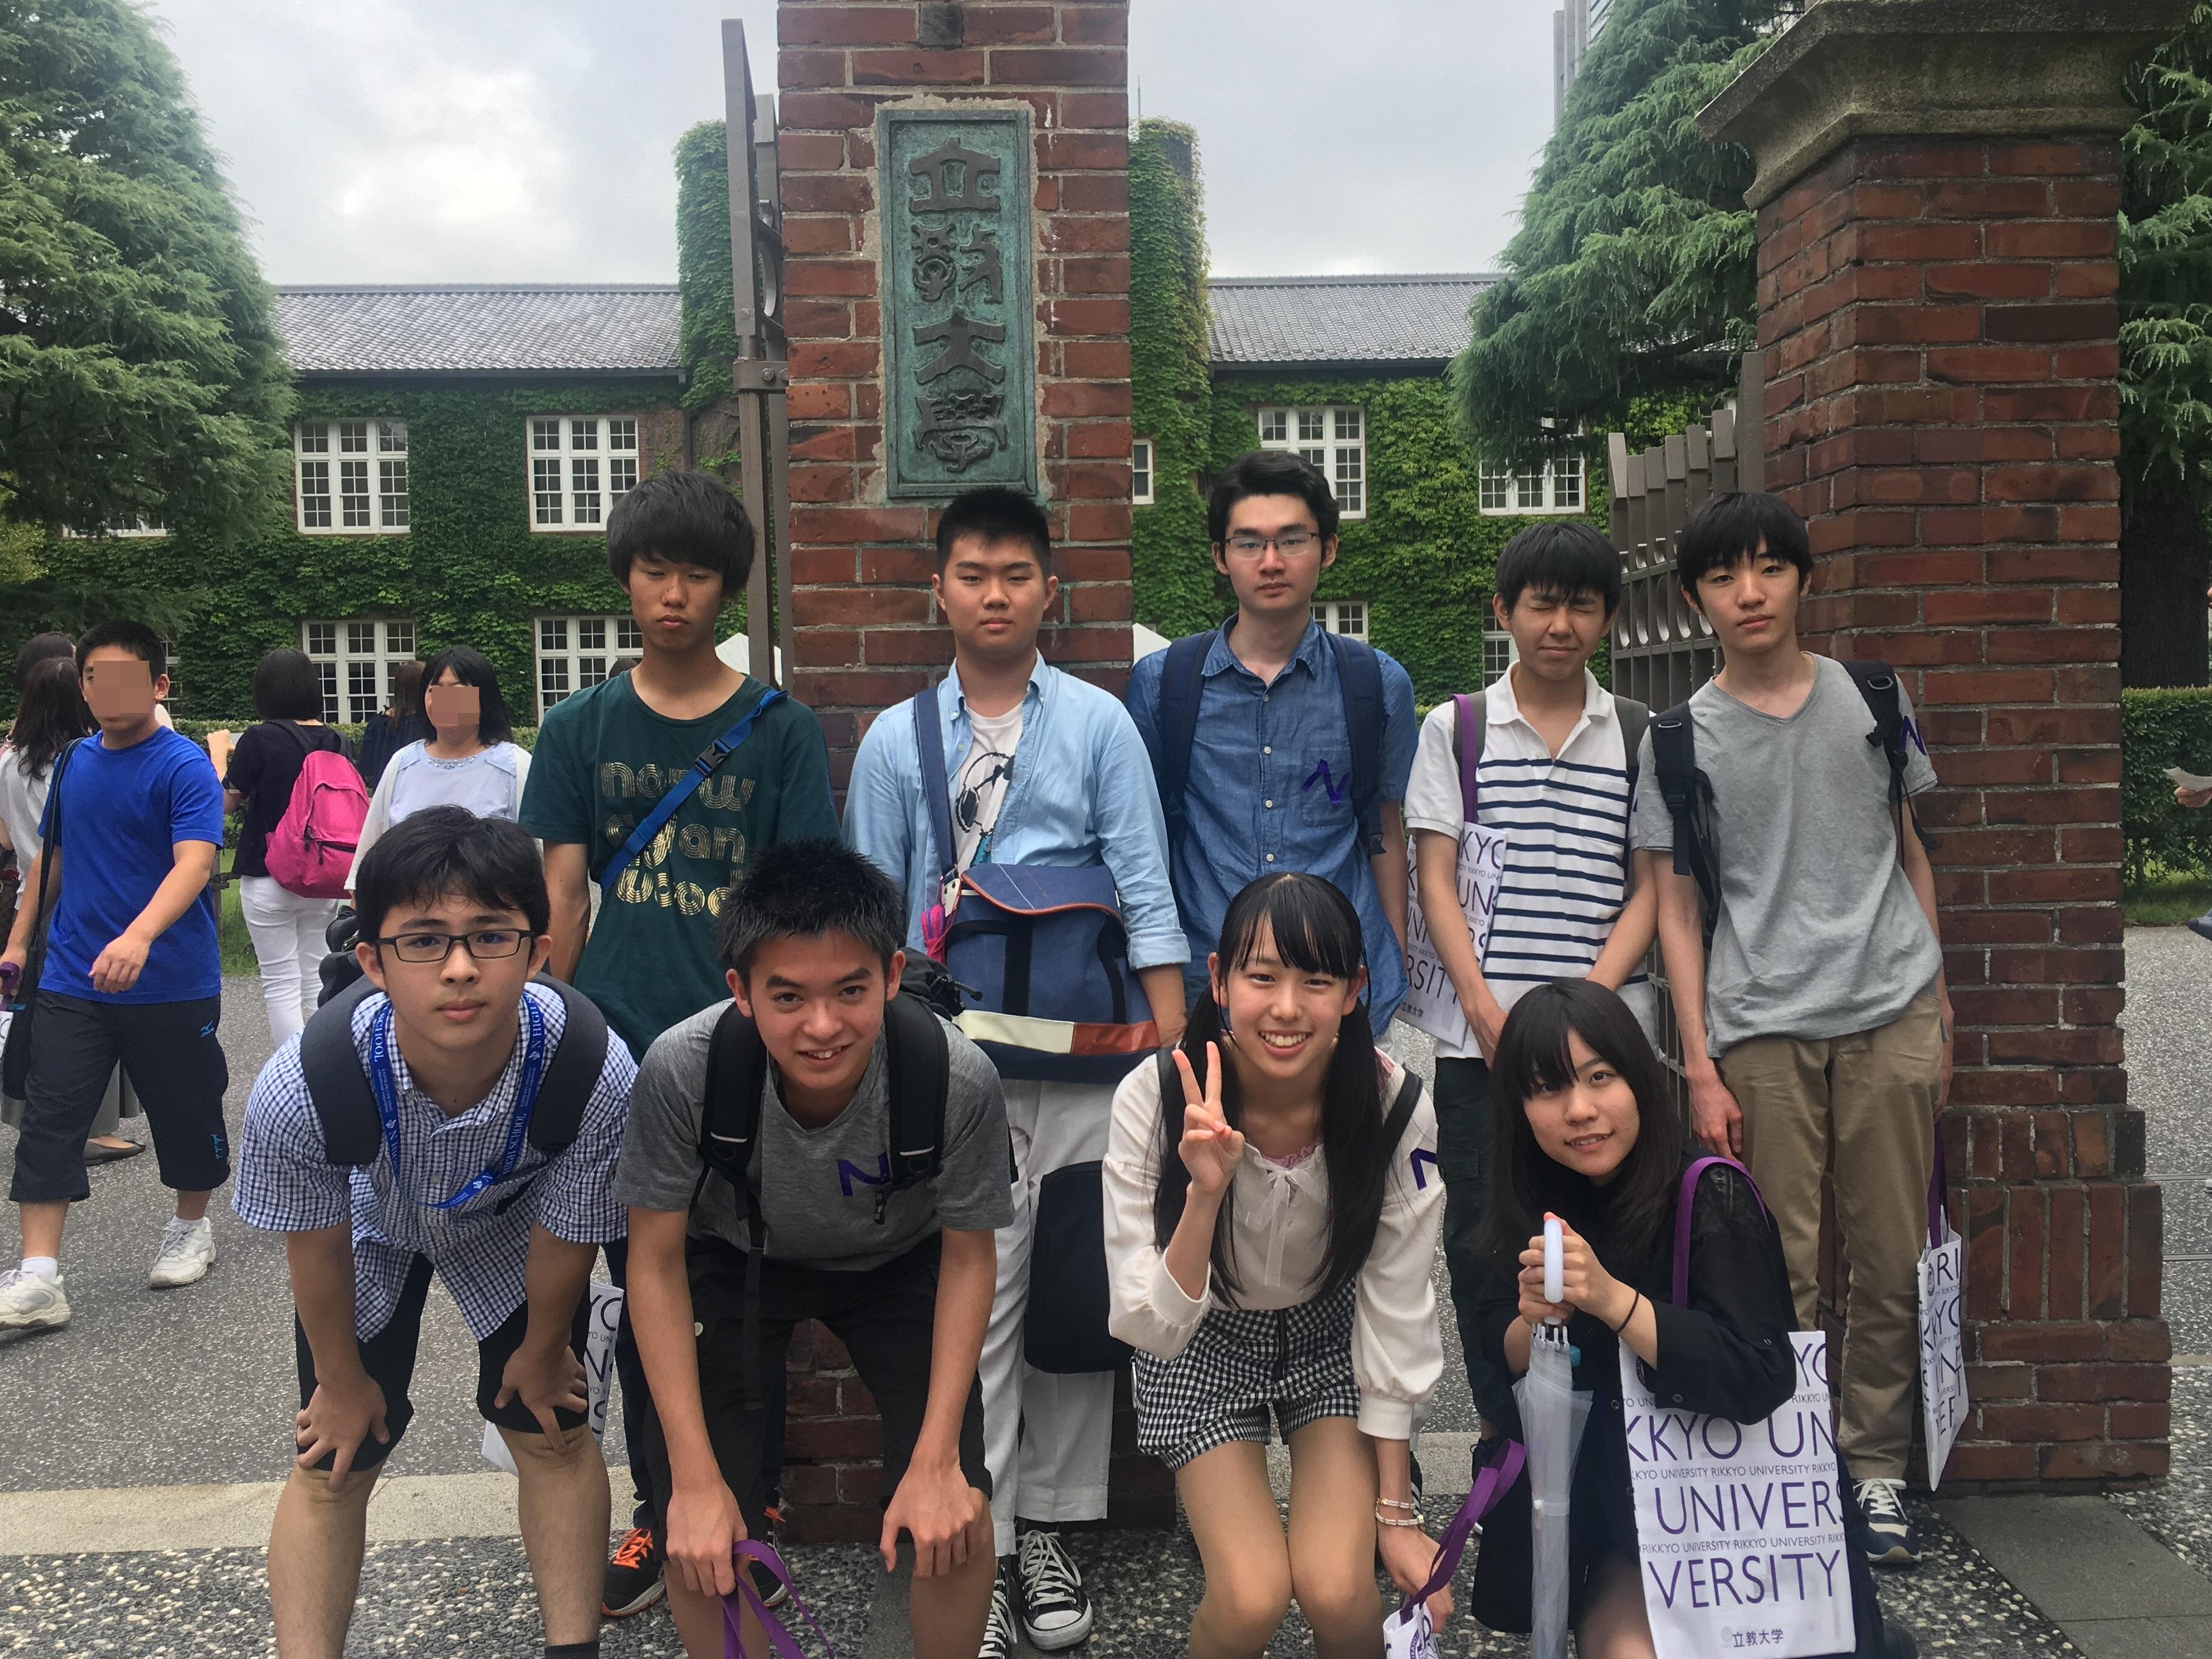 東京の大学を巡るオープンキャンパスツアーを開催